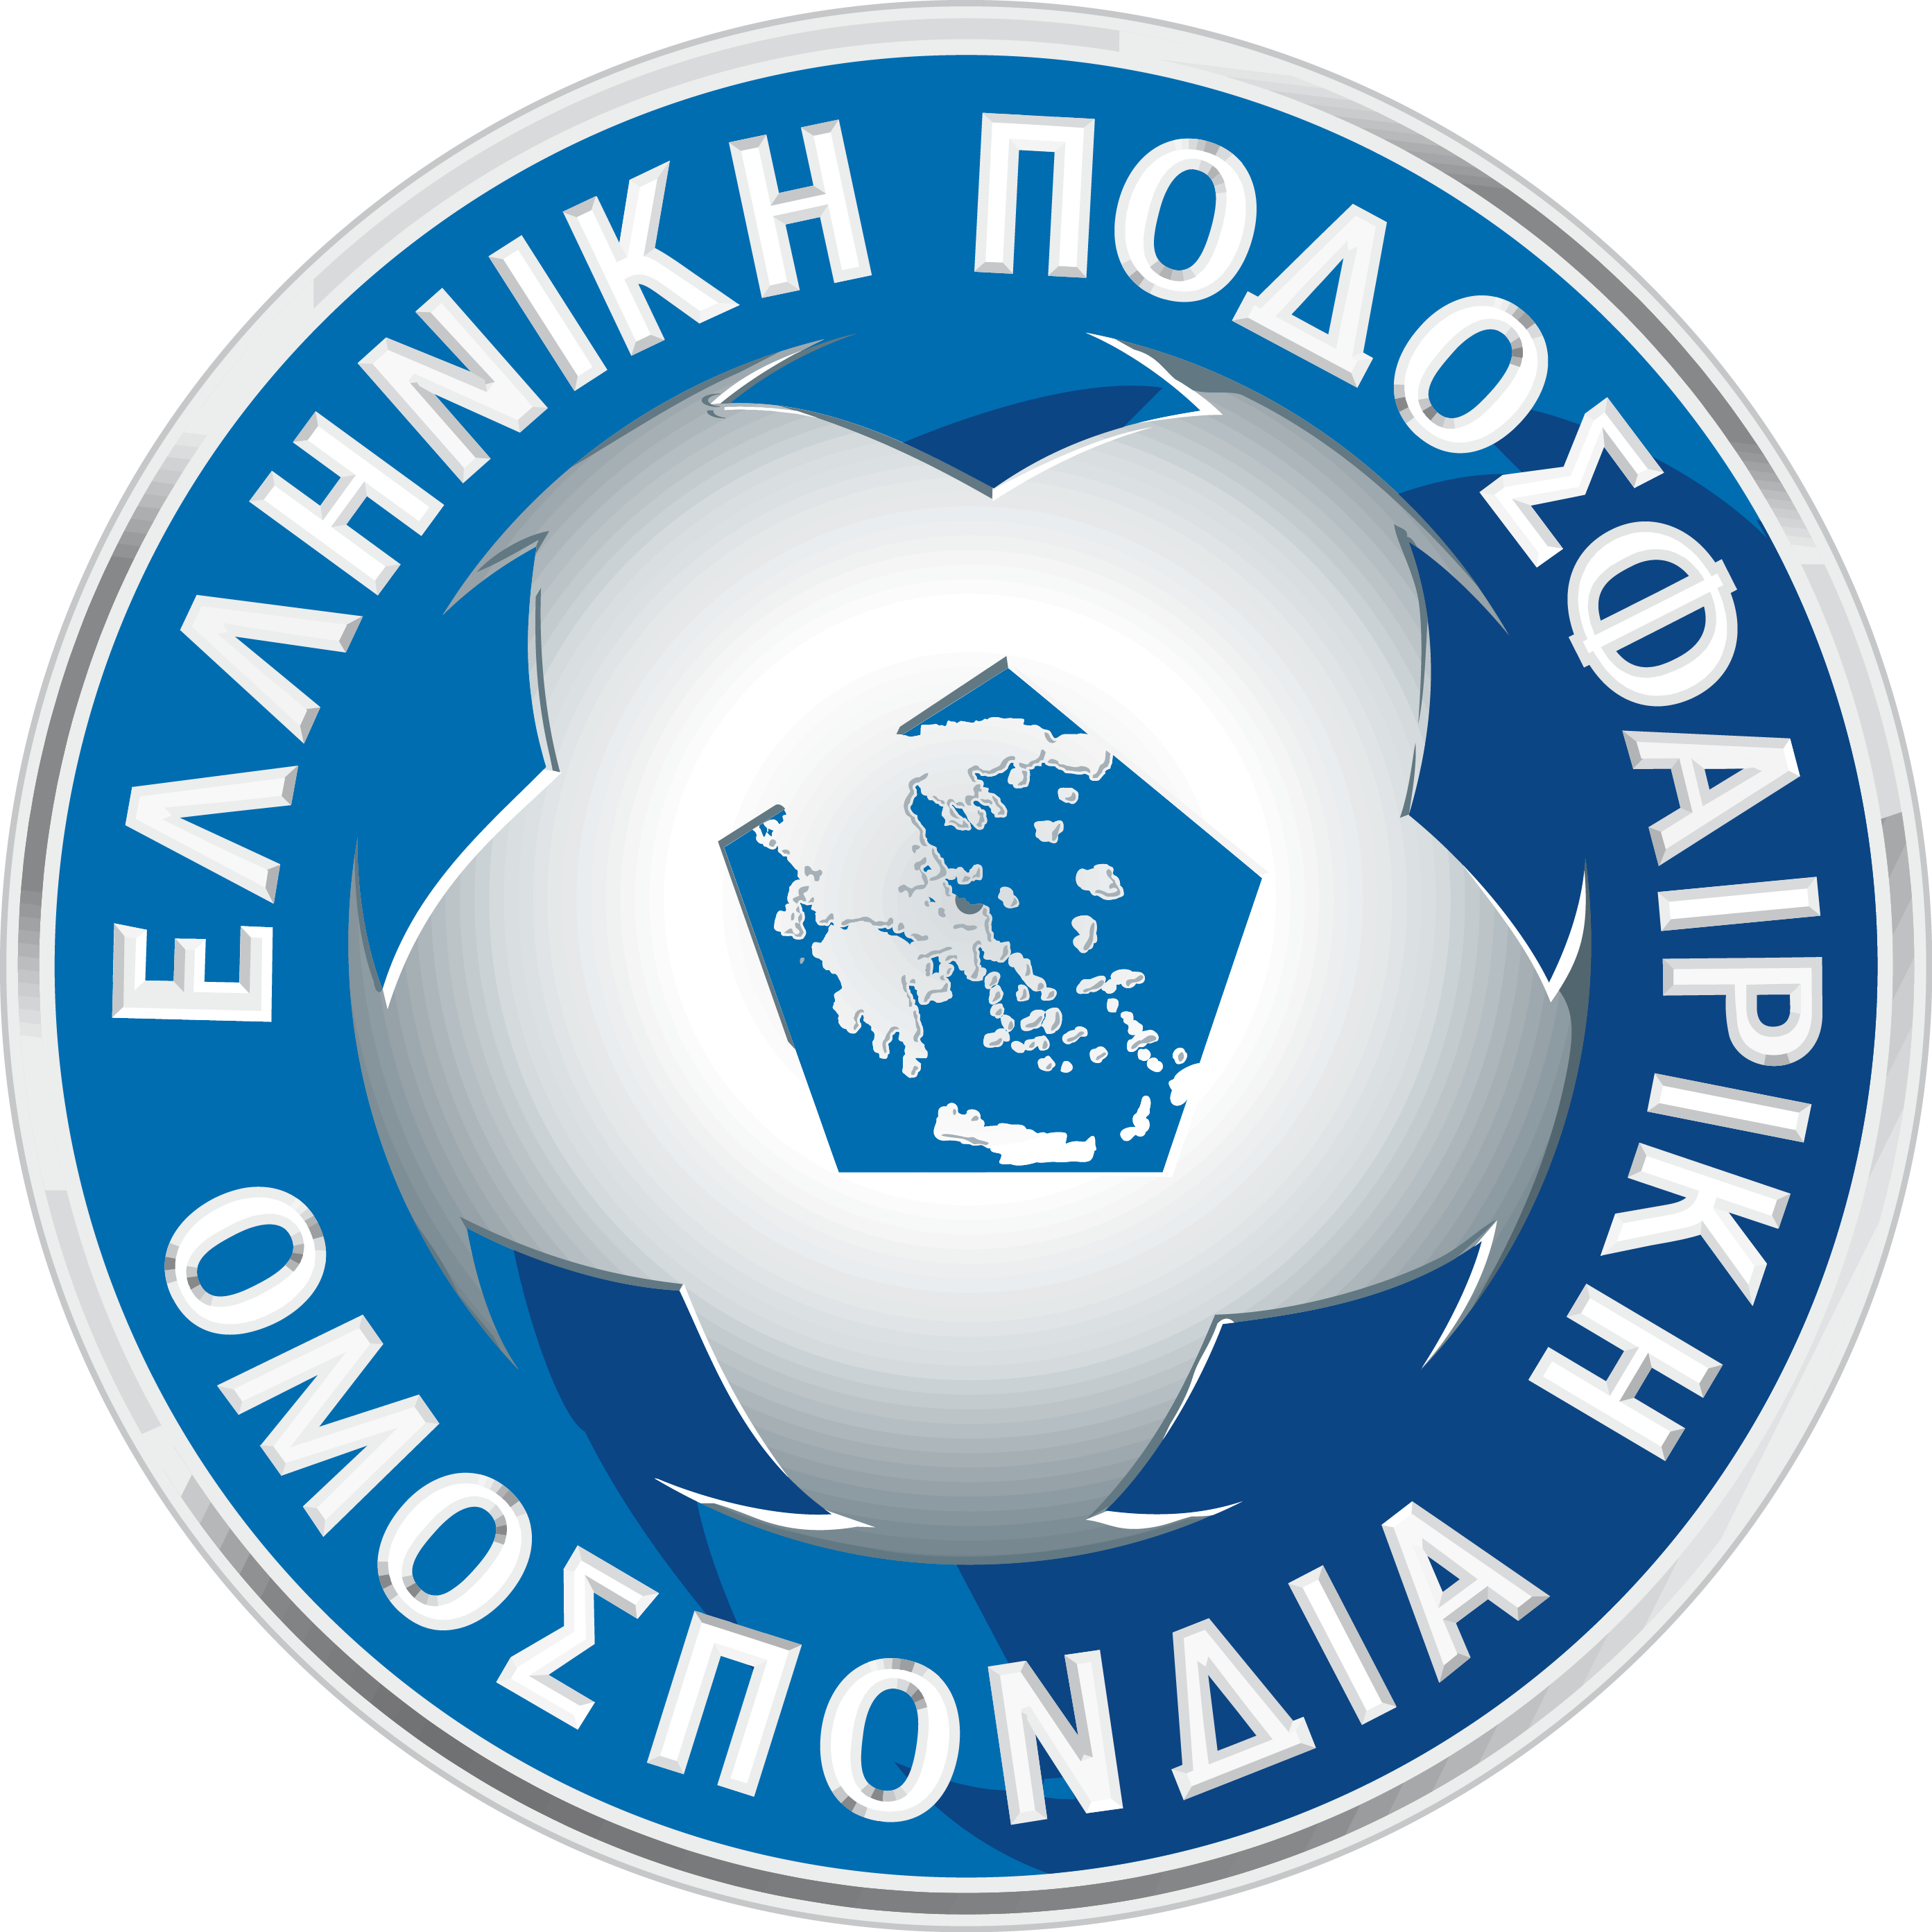 希臘足球協會